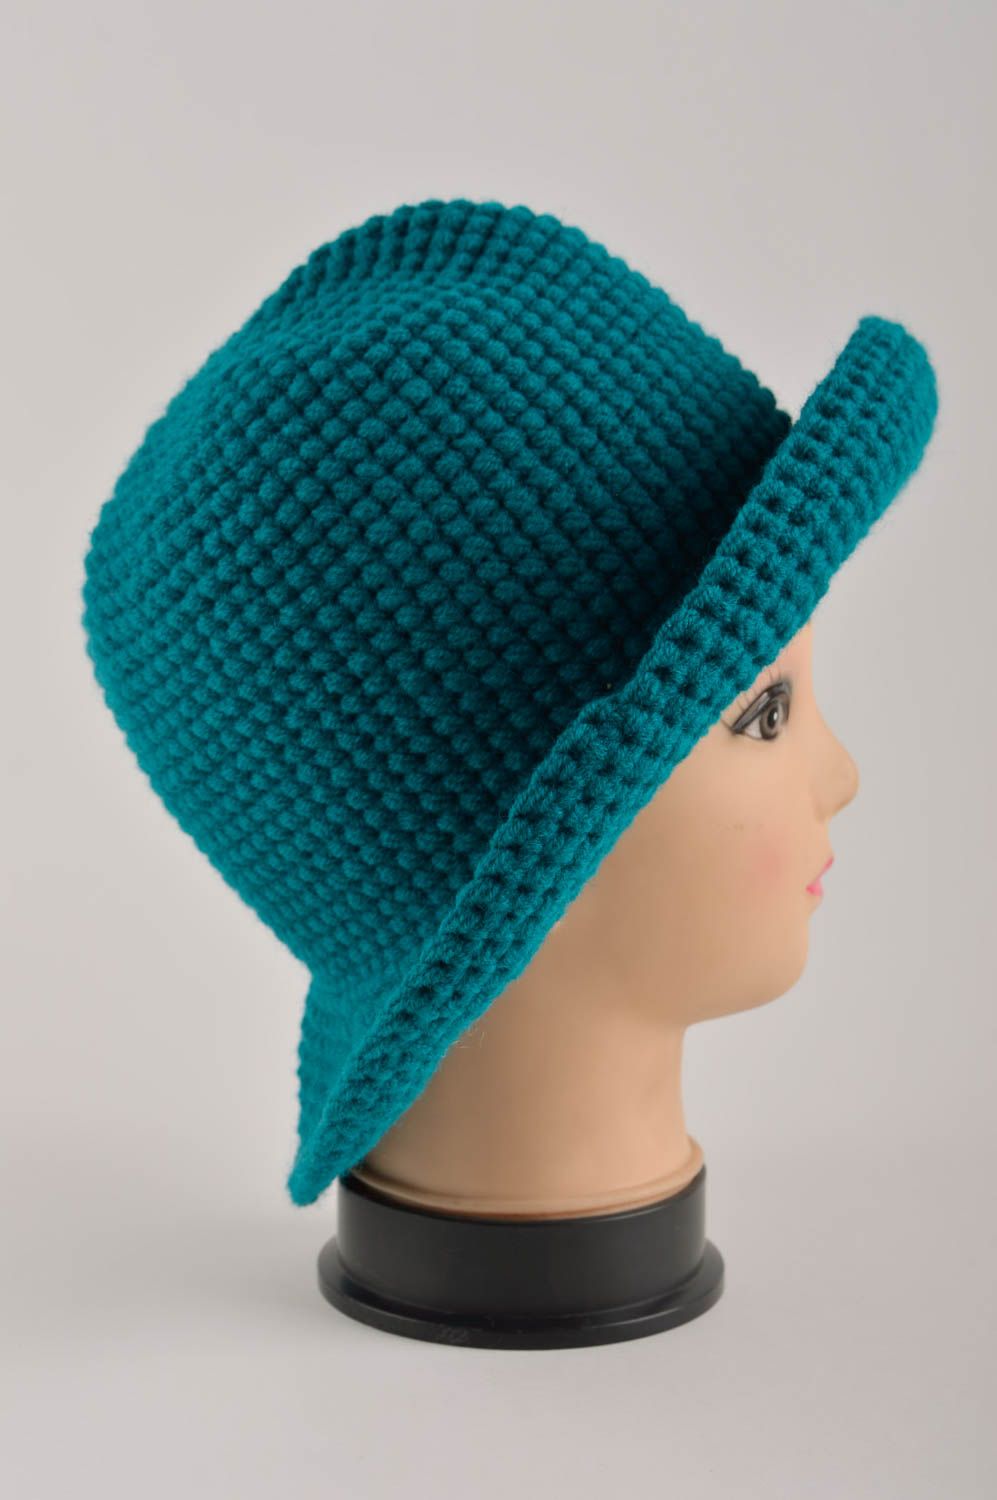 Handmade hat crocheted hat woolen hat for women gift ideas unusual headwear photo 4